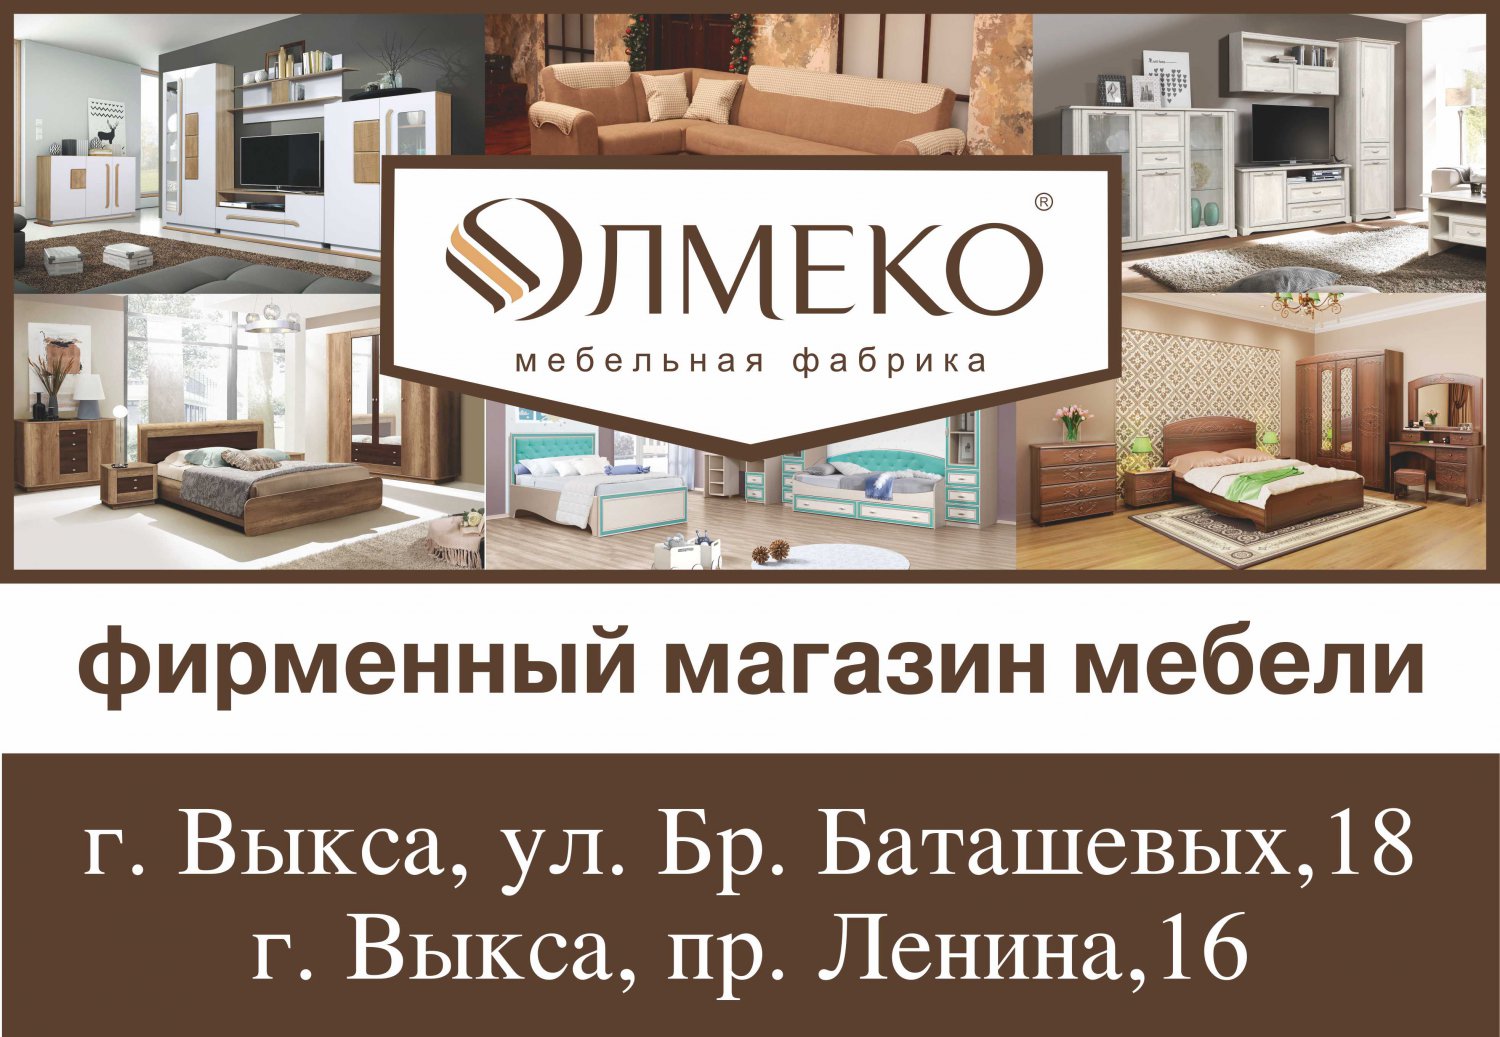 Мебельная фабрика «Олмеко»: любима многими, проверена временем